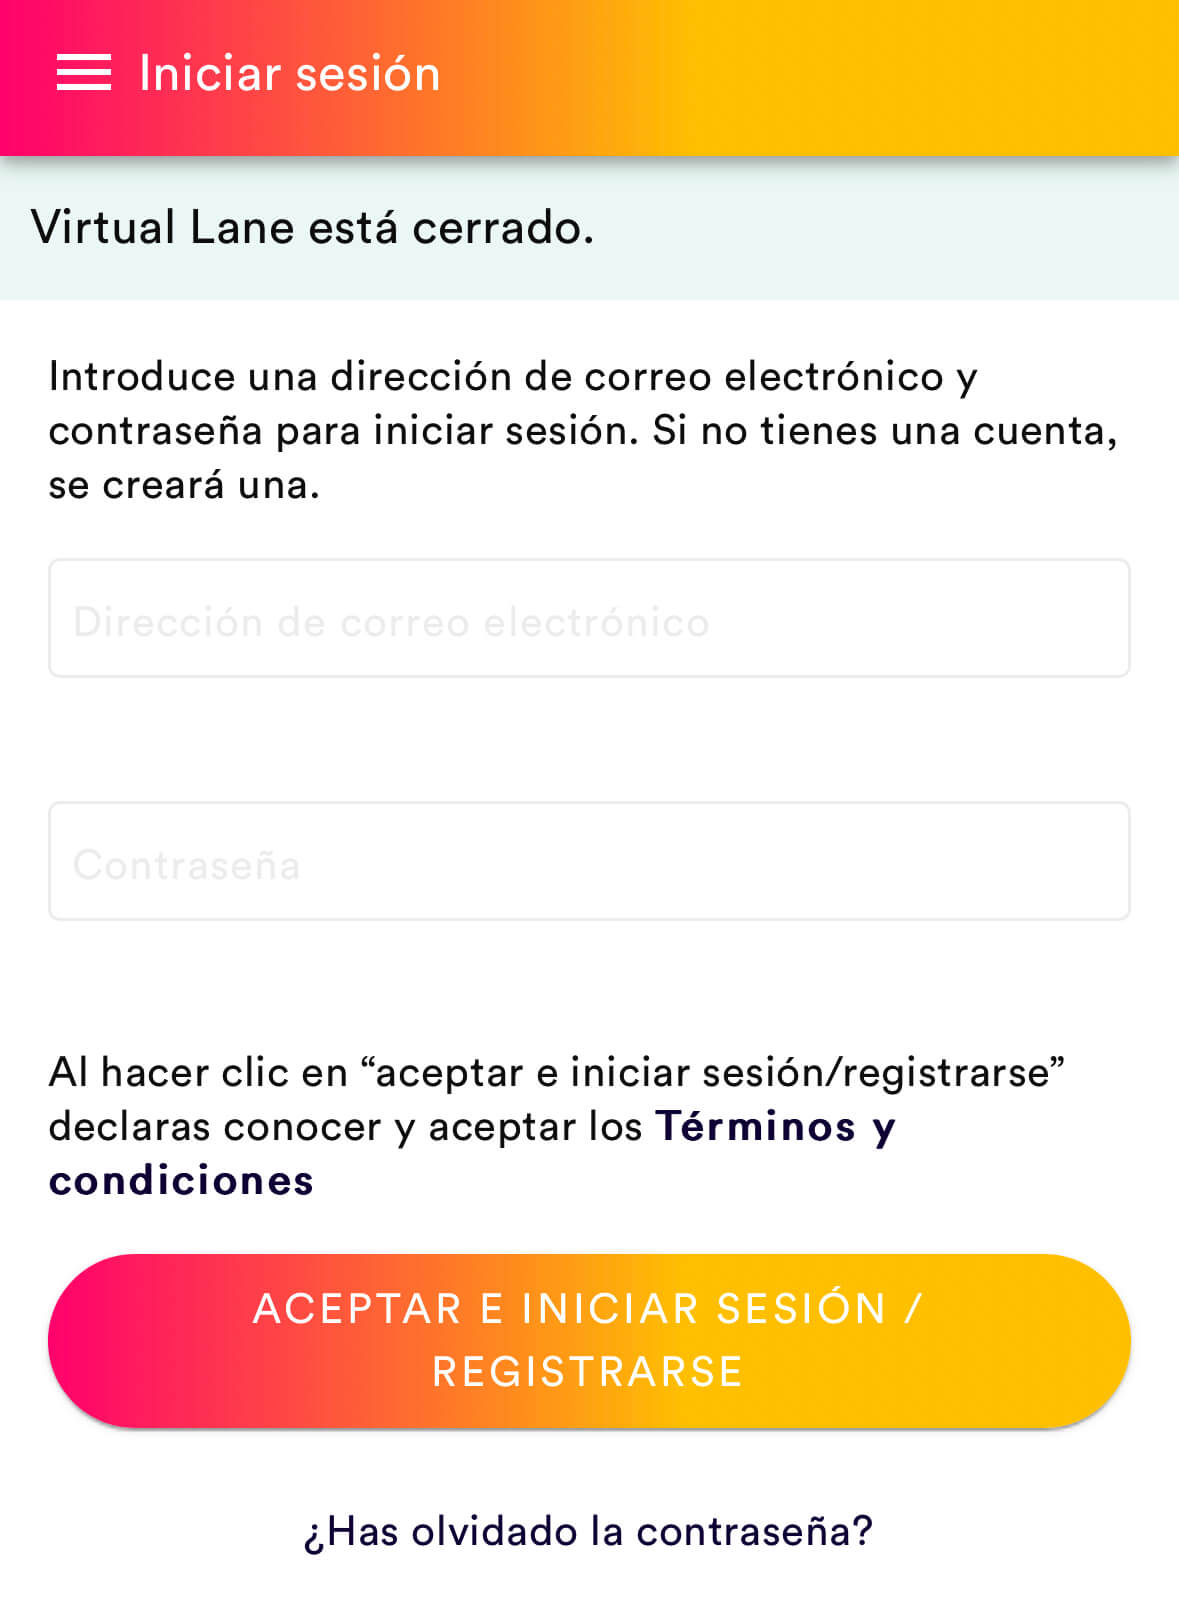 Virtual Lane PortAventura - Formulario login